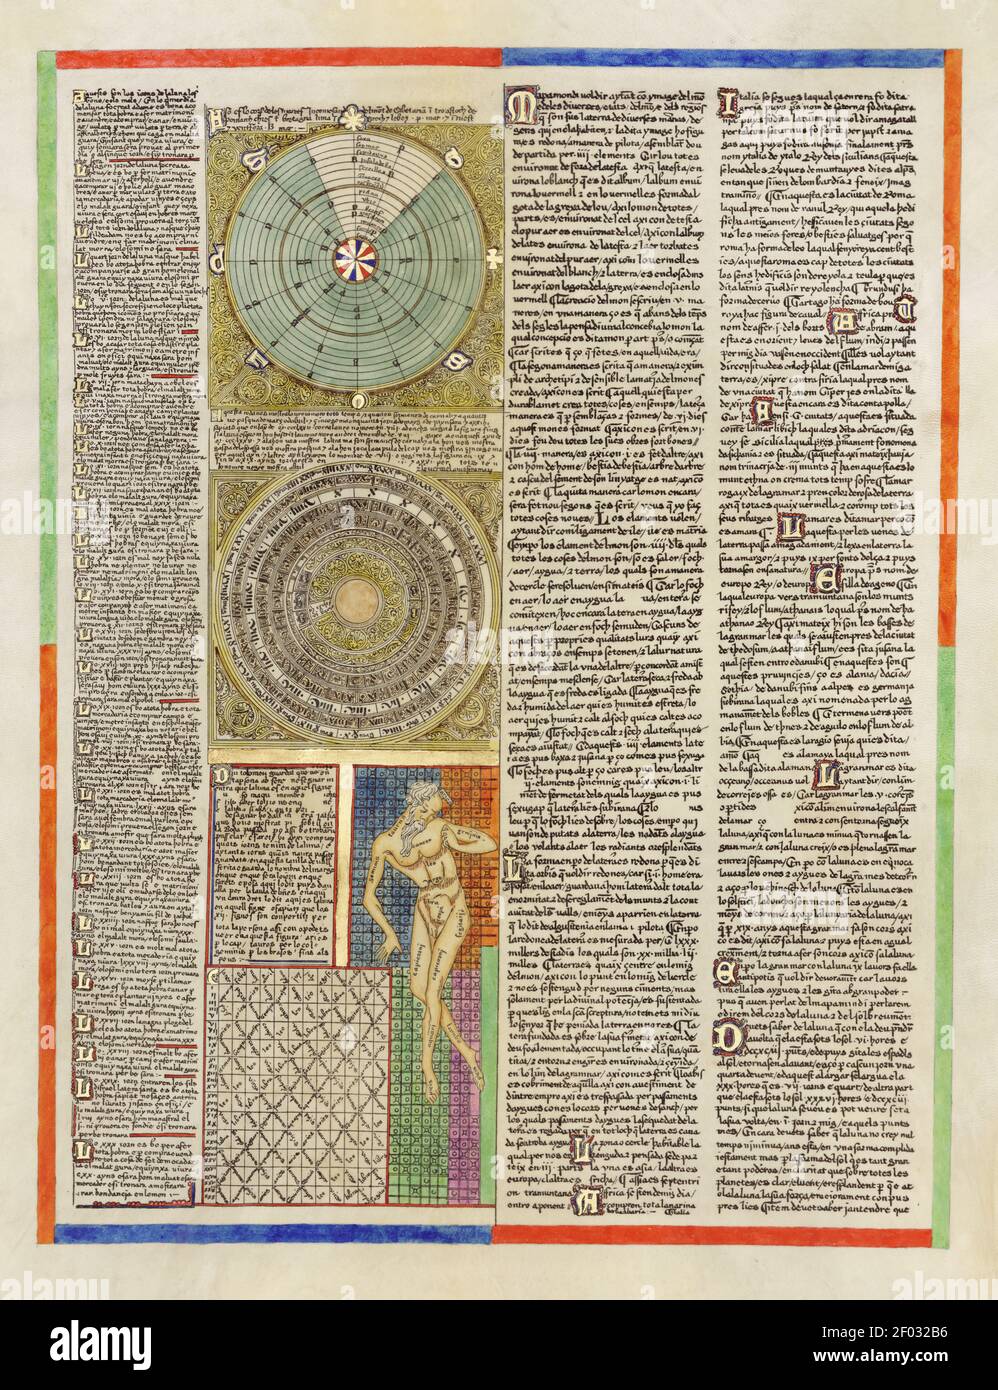 Aus einem alten spanischen Atlas. Illustrationen und Diagramme. Sehr hohe Auflösung. Stockfoto